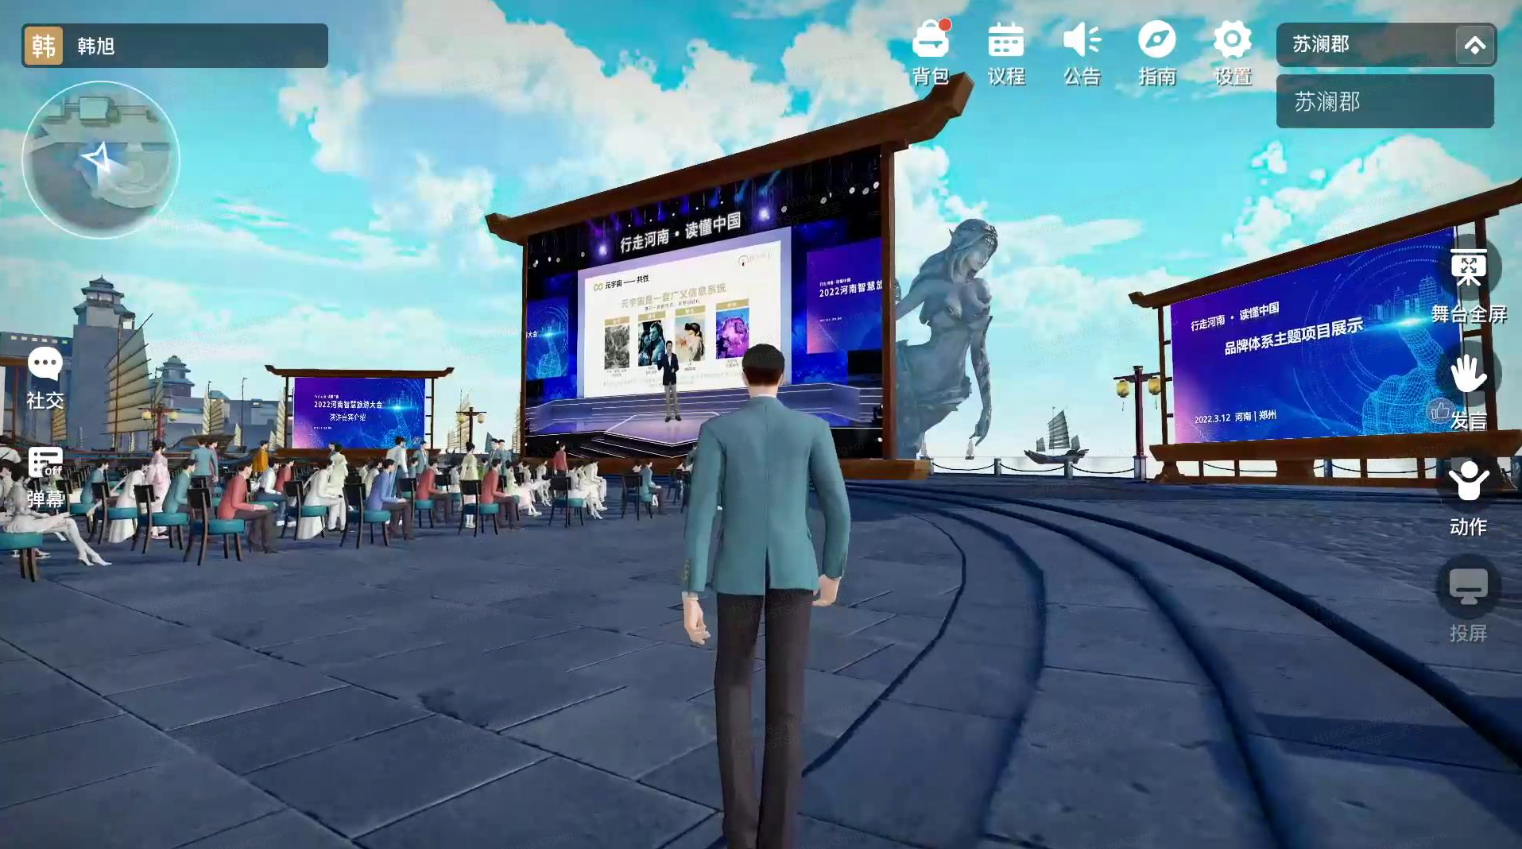 这是一张虚拟现实或游戏内的截图，展示一个角色背对观众，面向一个大屏幕和观看的虚拟人群的场景。